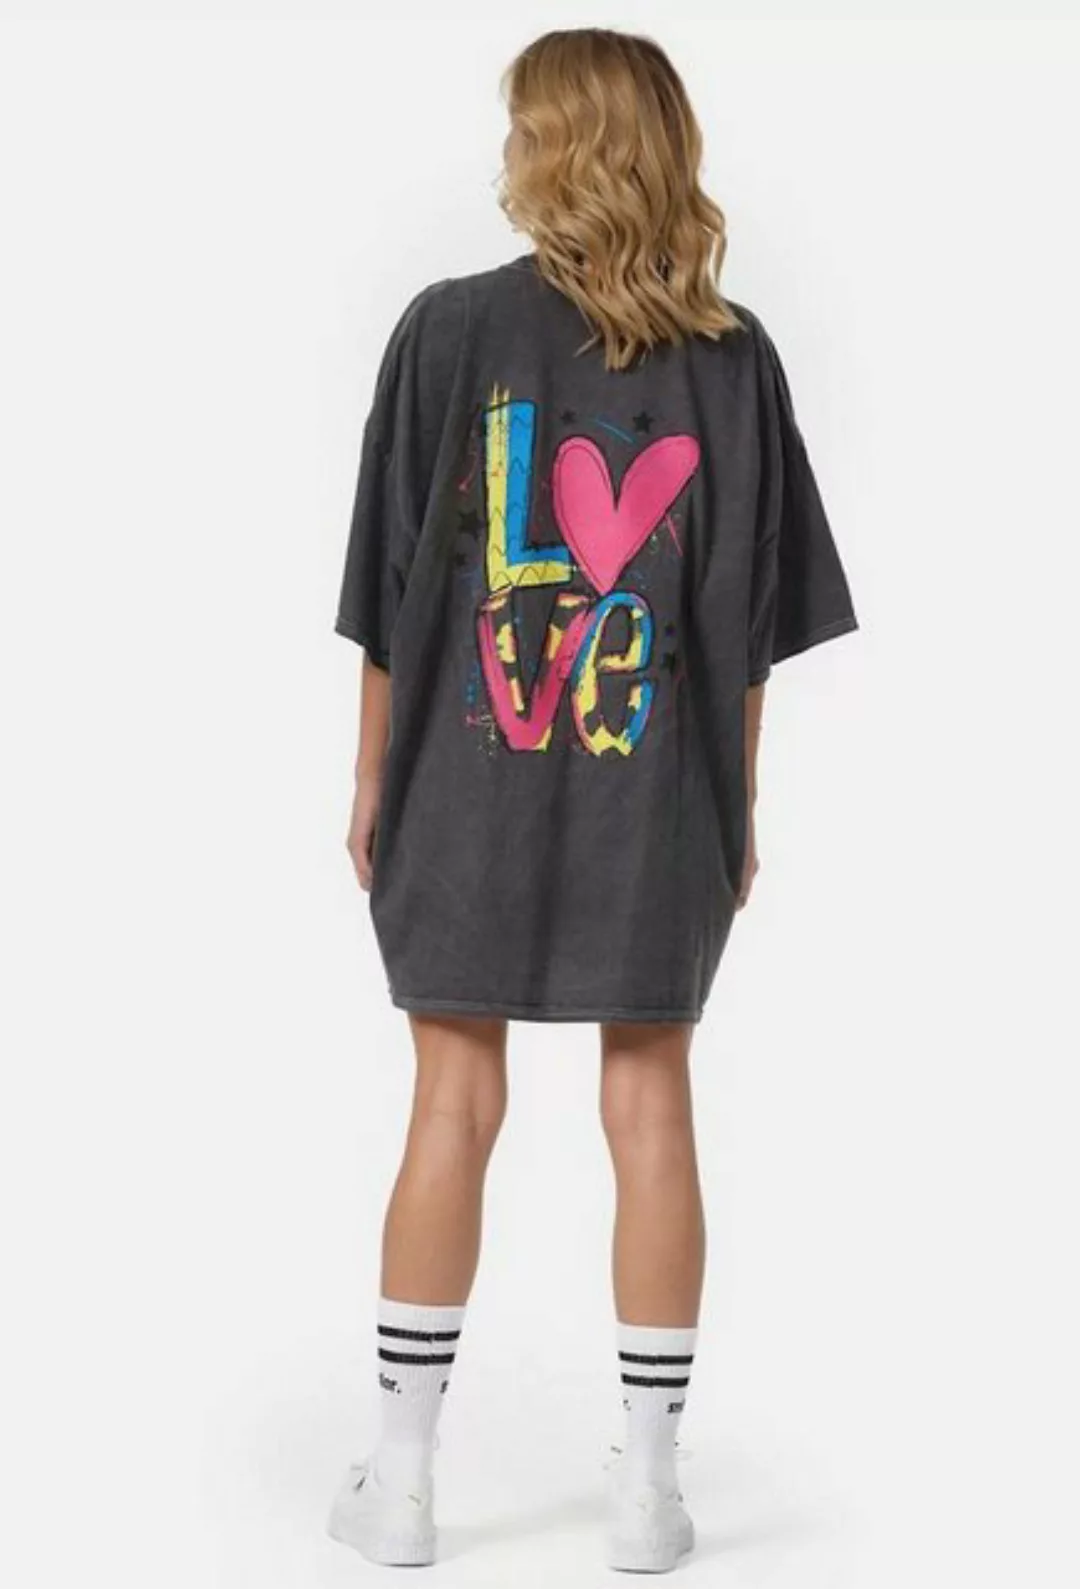 Worldclassca T-Shirt Worldclassca Oversized LOVE Print T-Shirt lang Tee Som günstig online kaufen